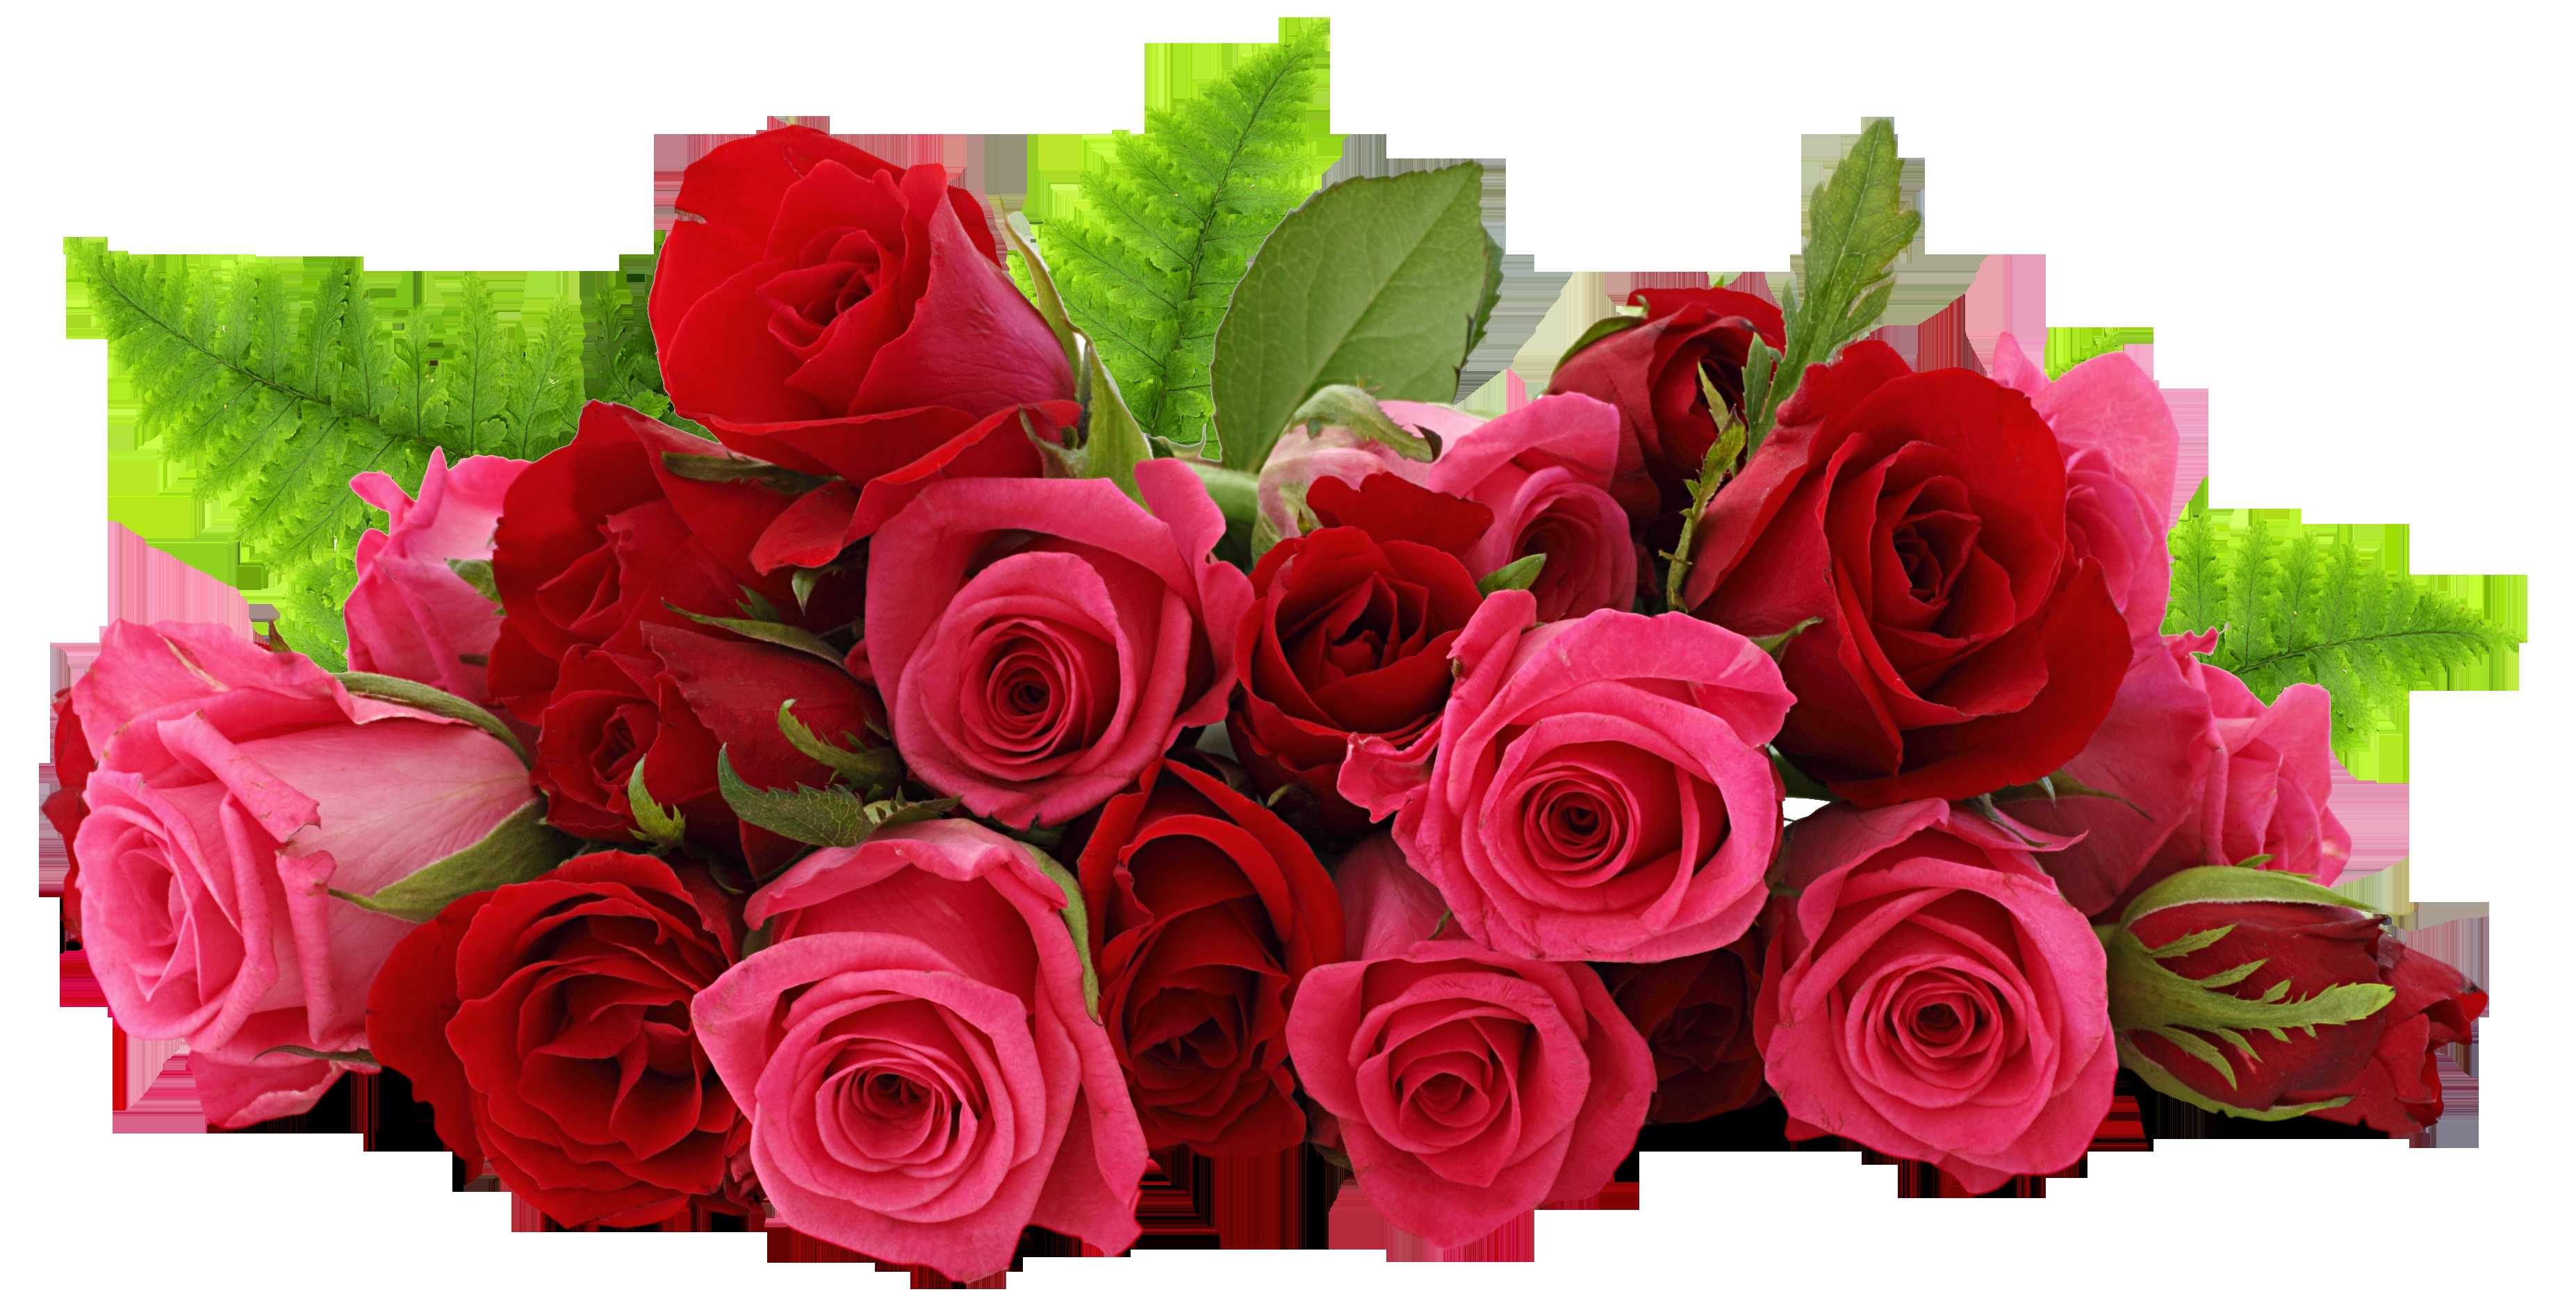 Good Evening Rose Flower - HD Wallpaper 